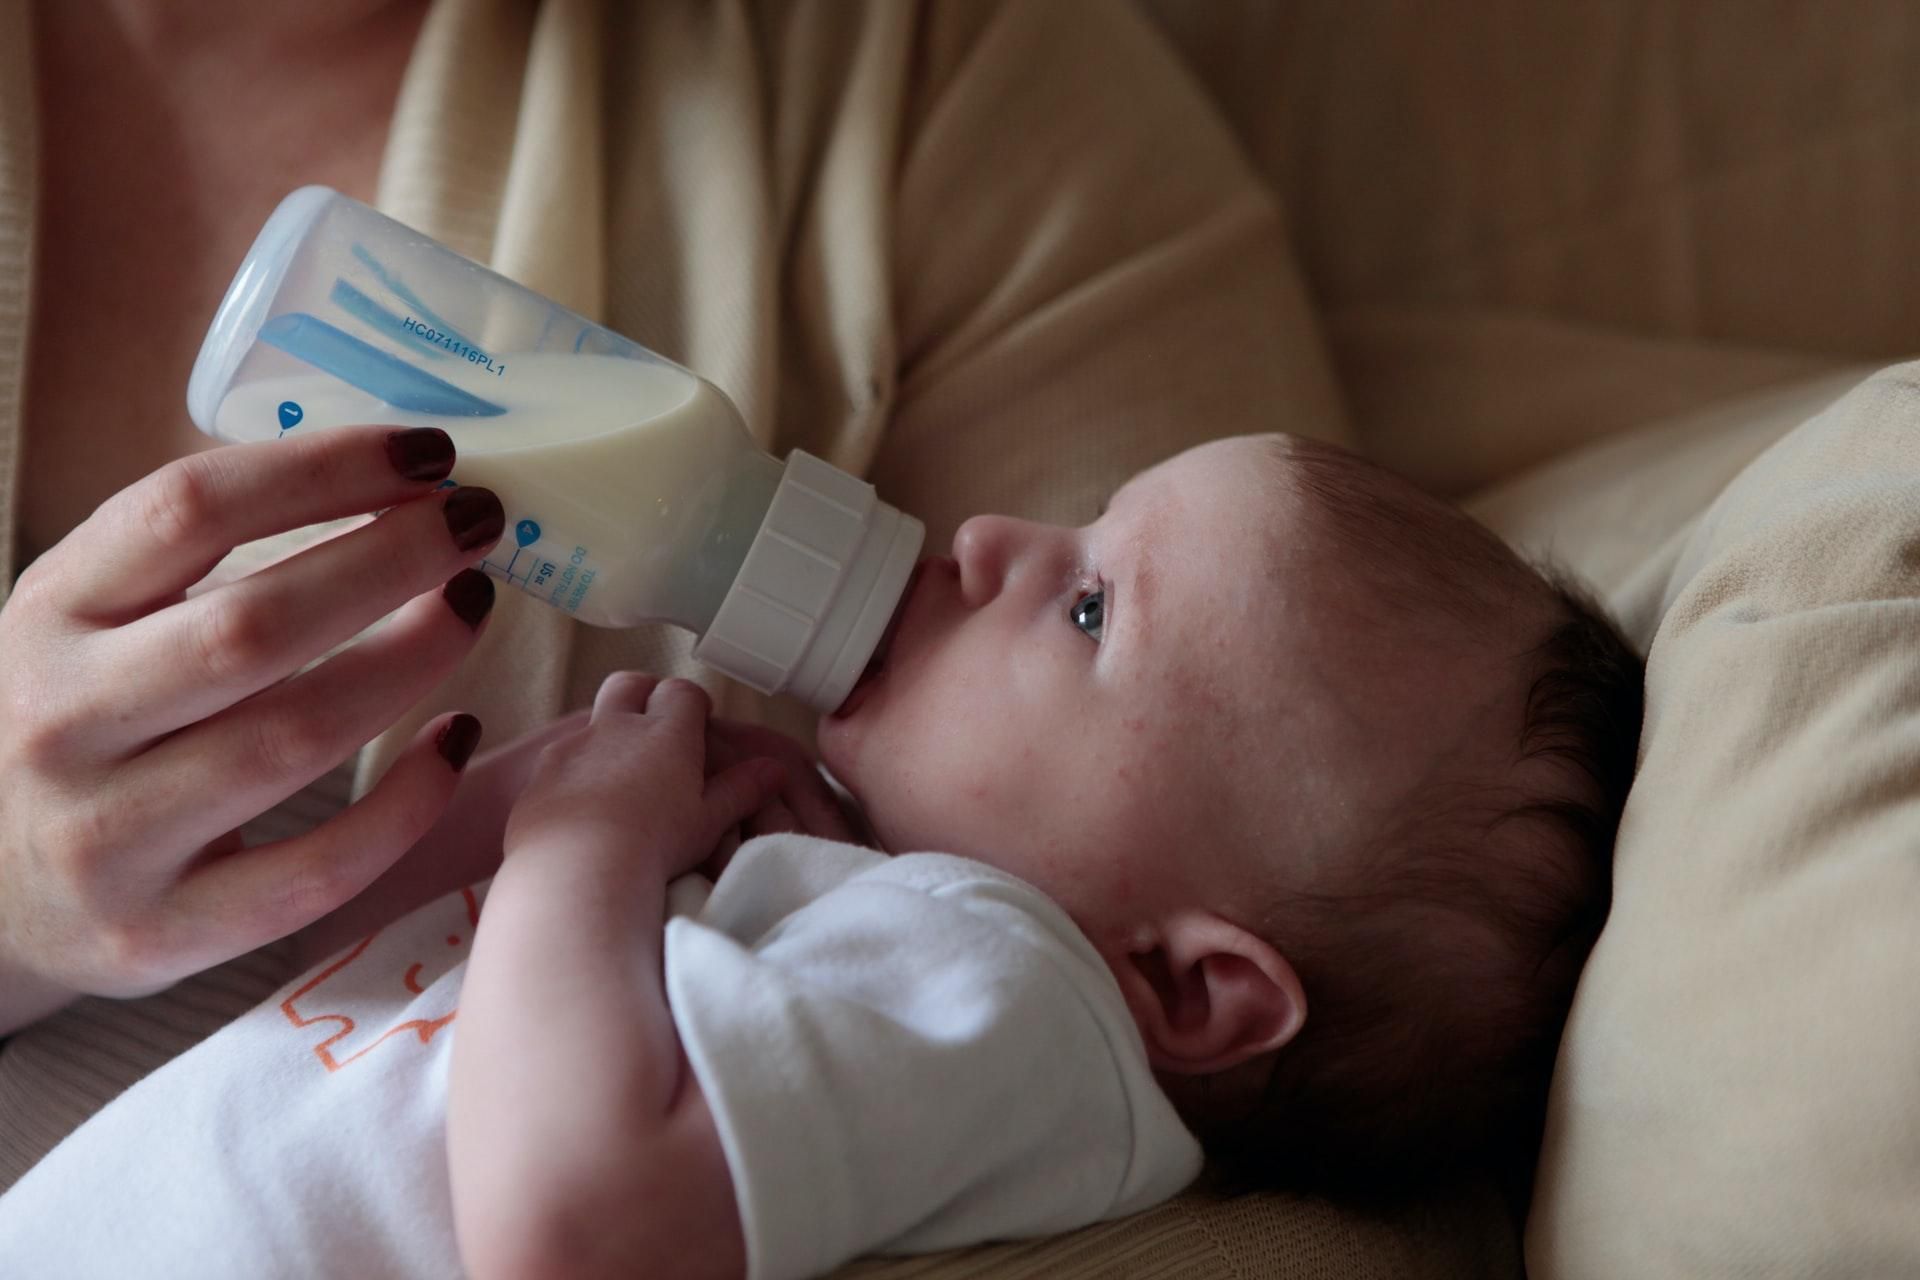 Младенцы, которых кормят из бутылочек, поглощают миллионы микропластиков: исследование